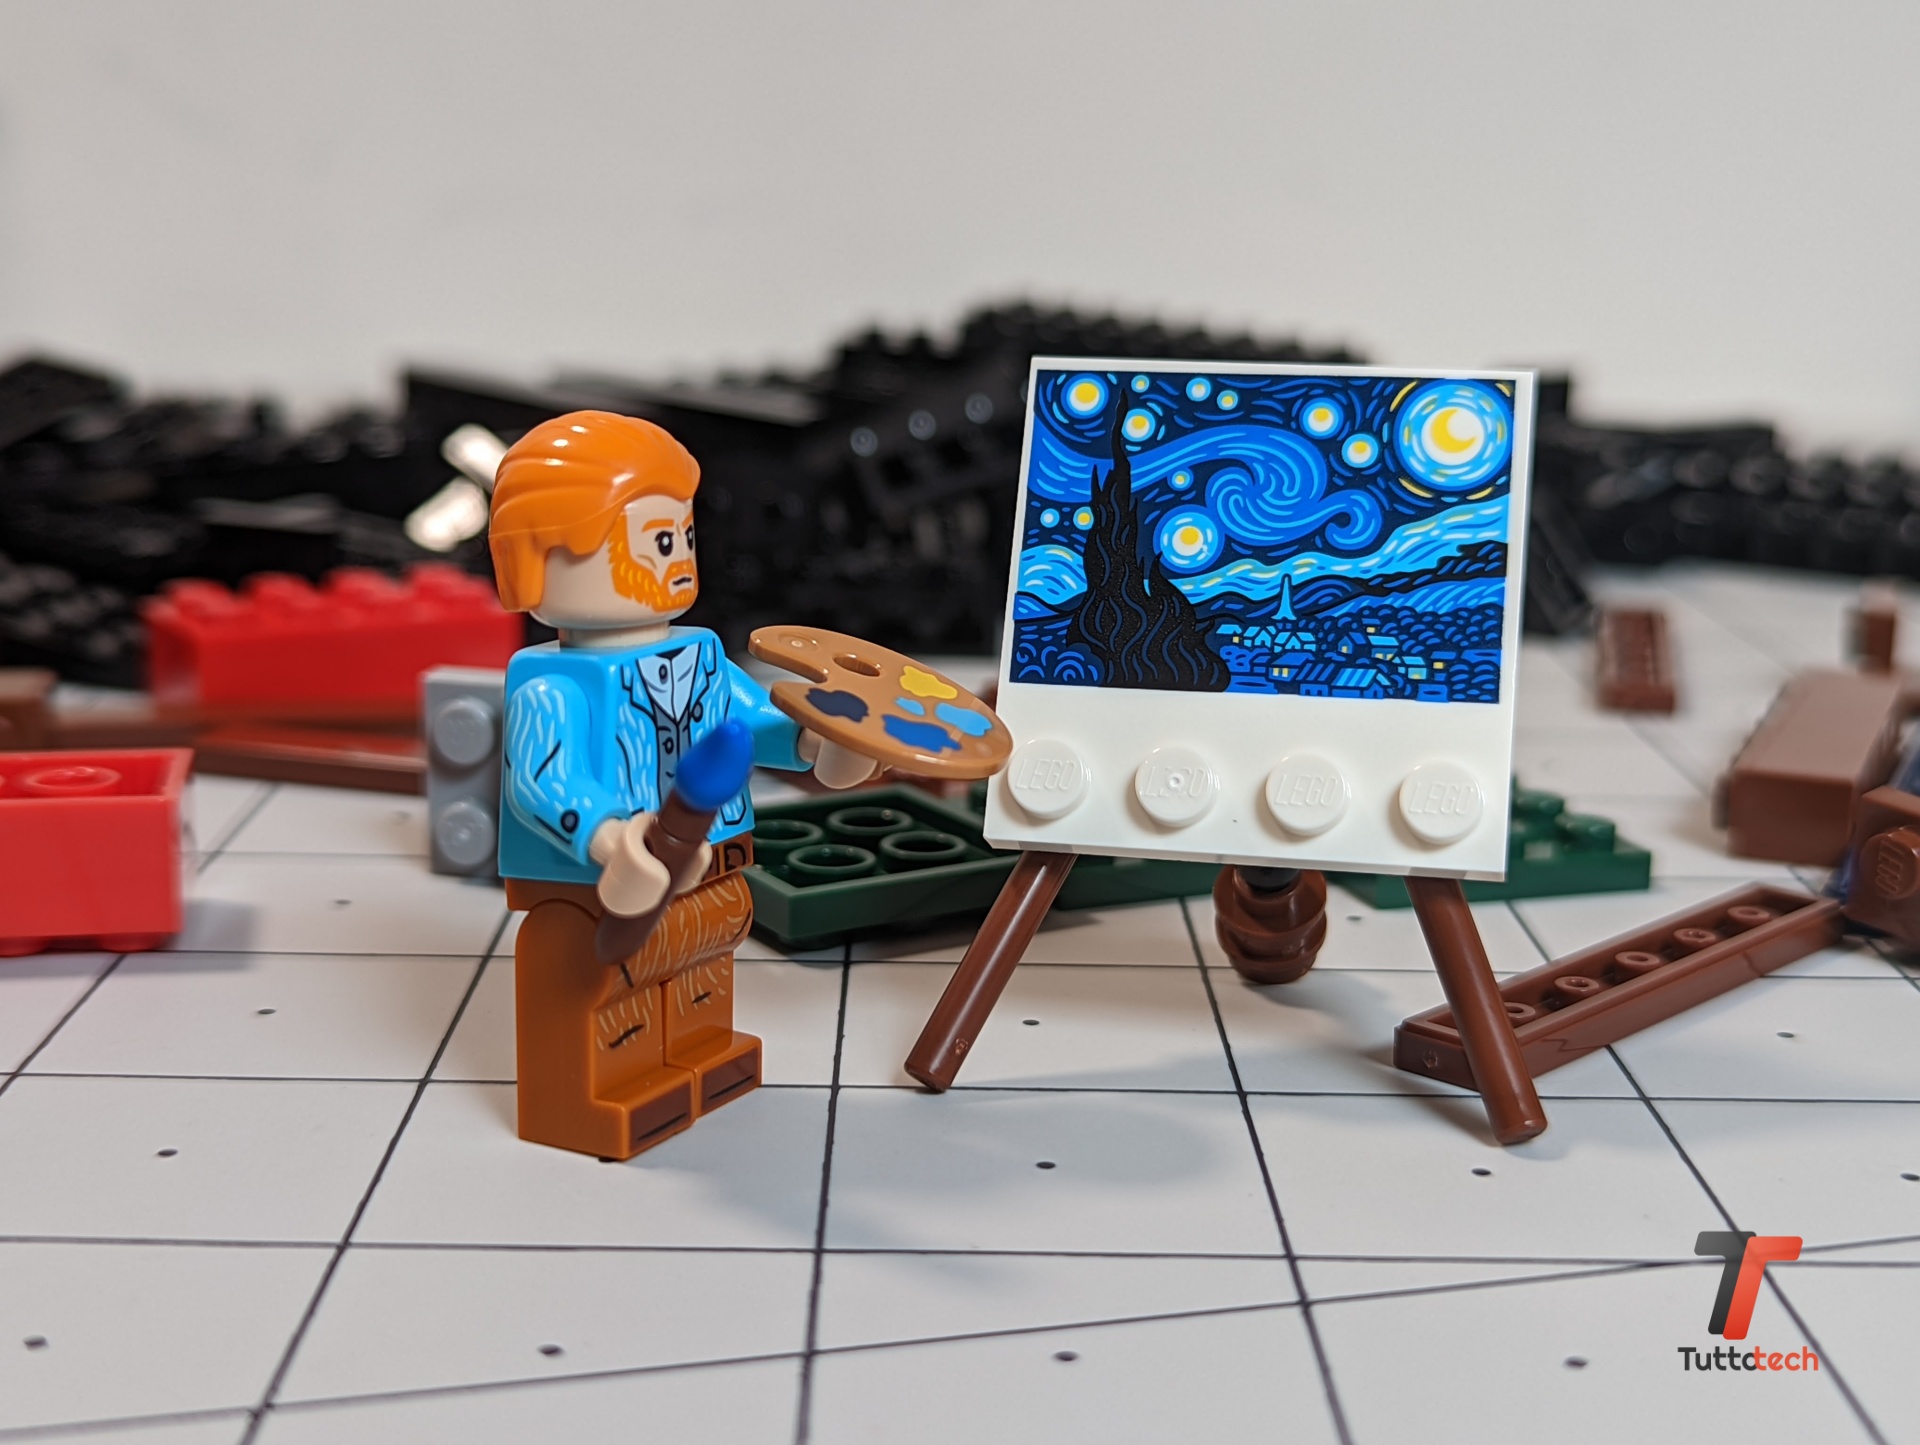 LEGO Ideas Vincent van Gogh - Notte stellata : : Giochi e  giocattoli